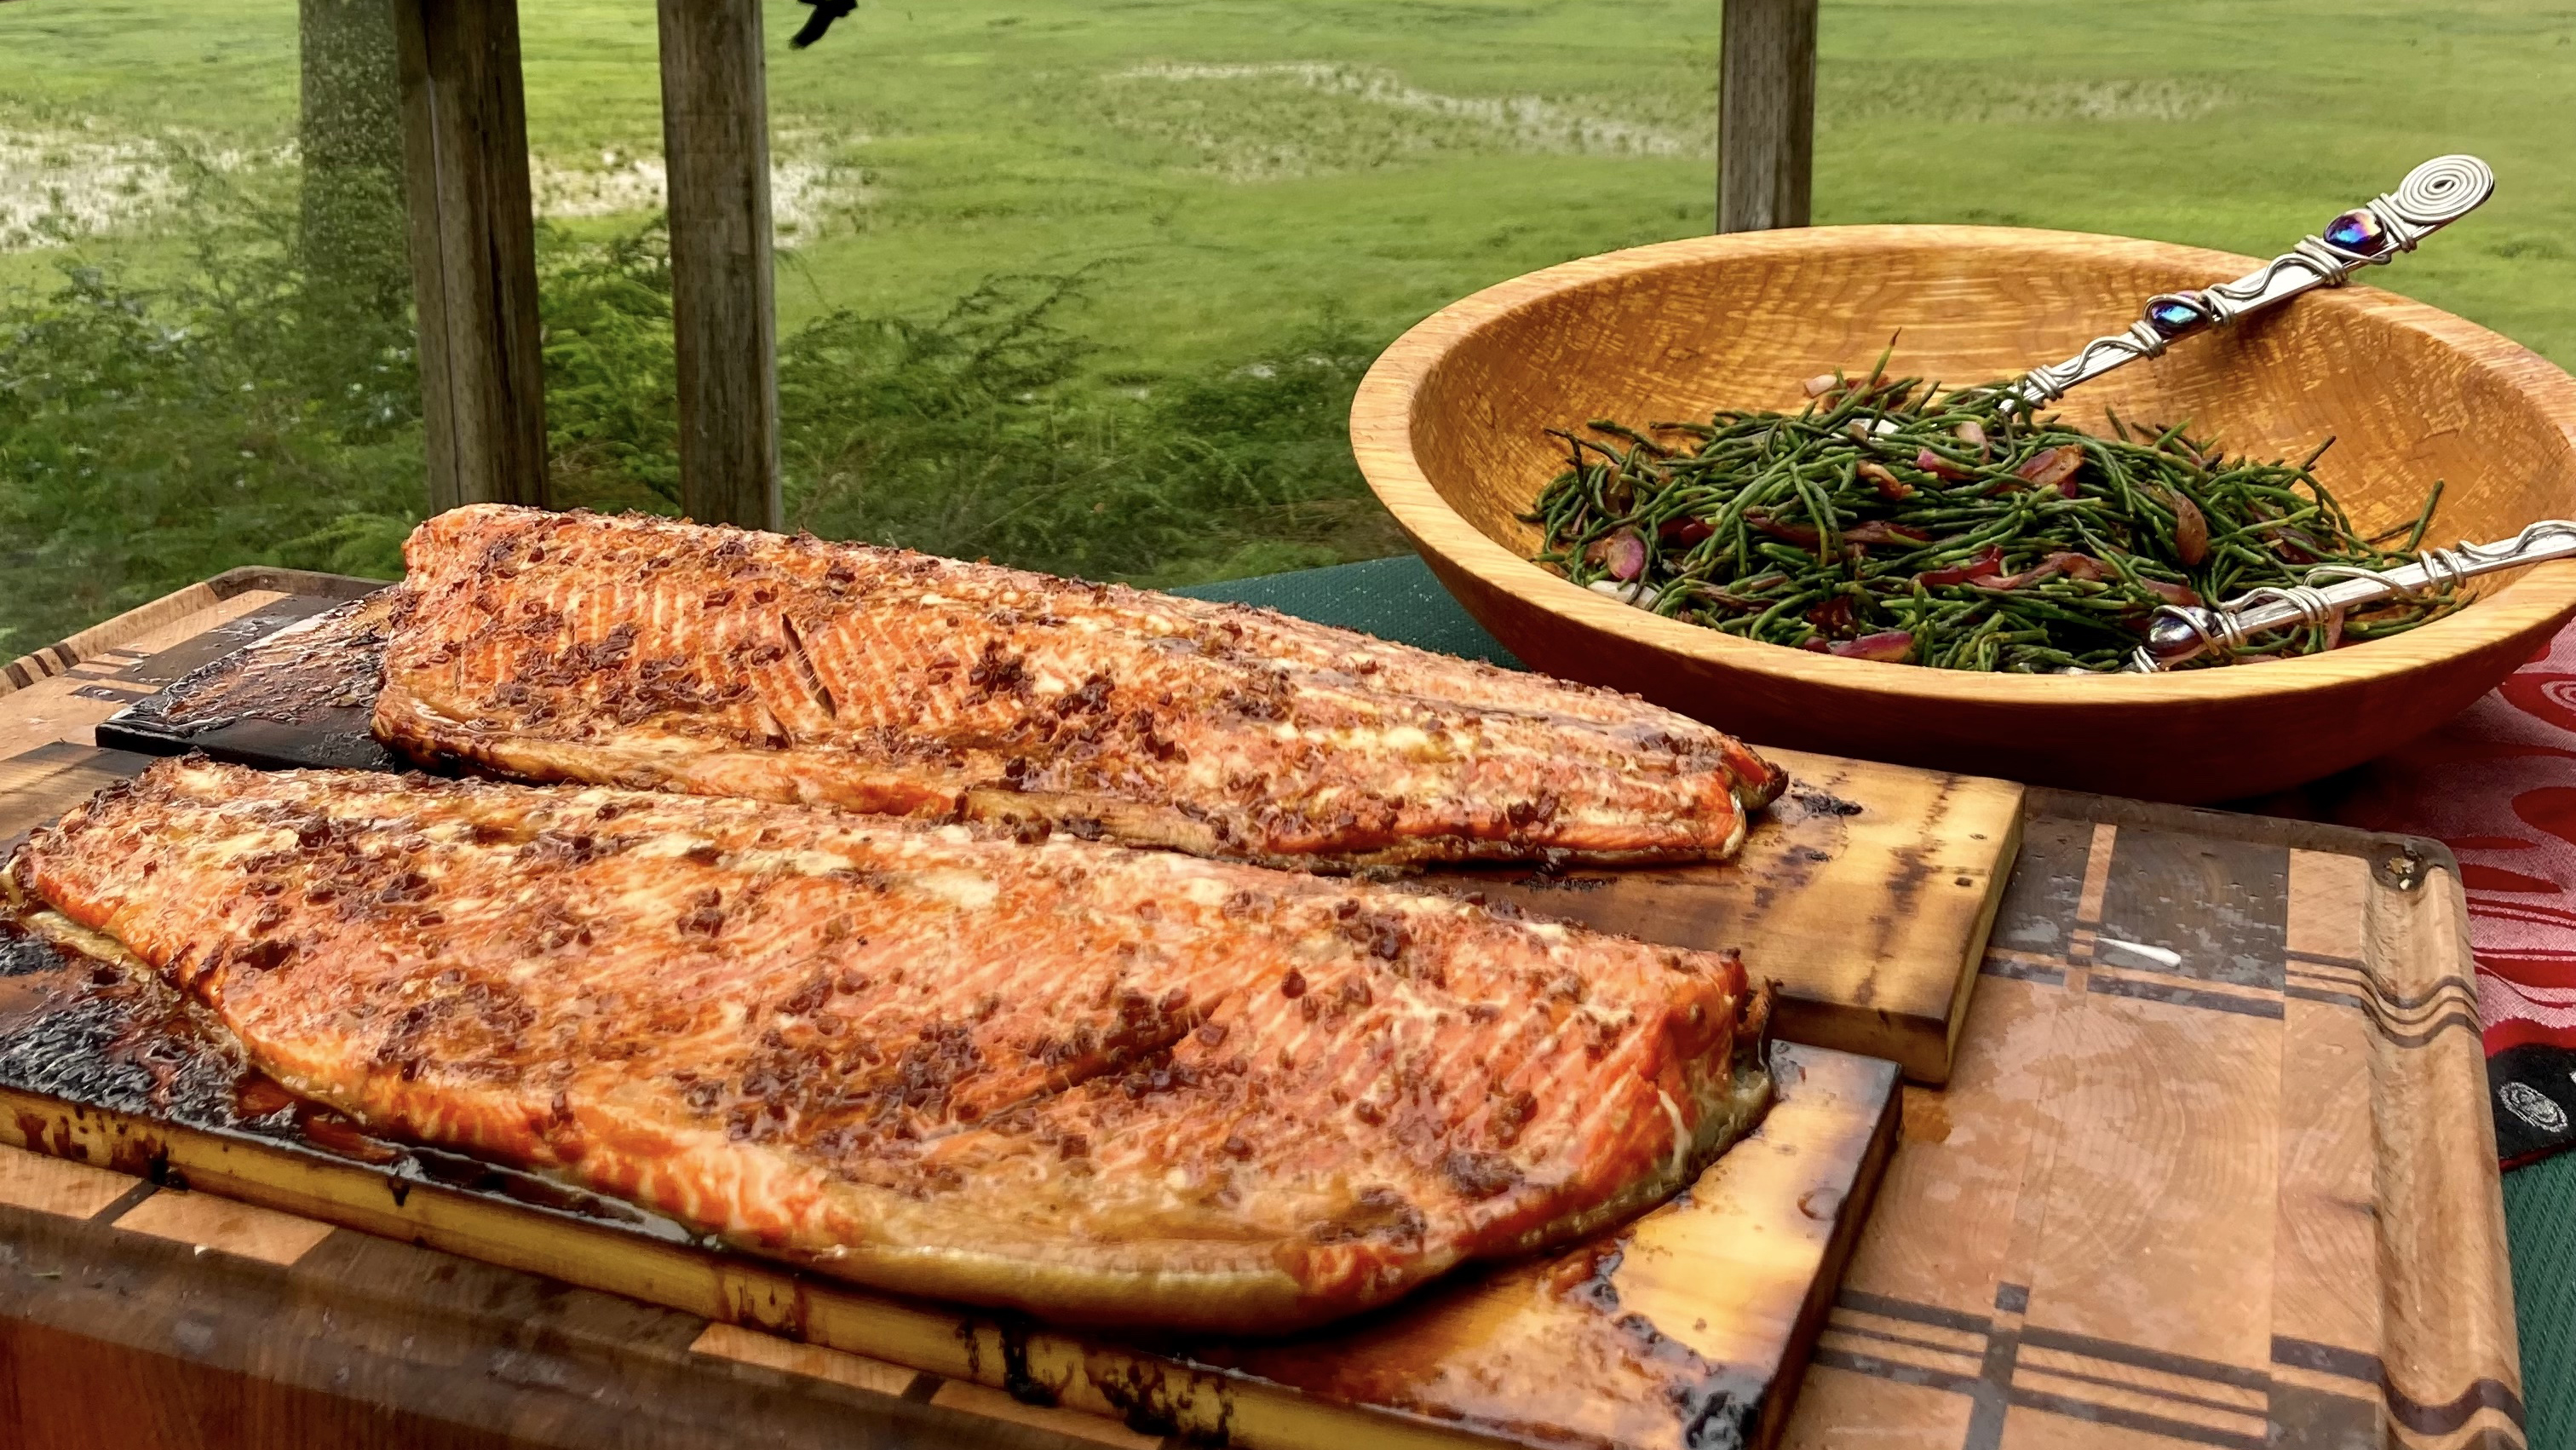 Cedar planked salmon with sea asaparagus, bacon and onions